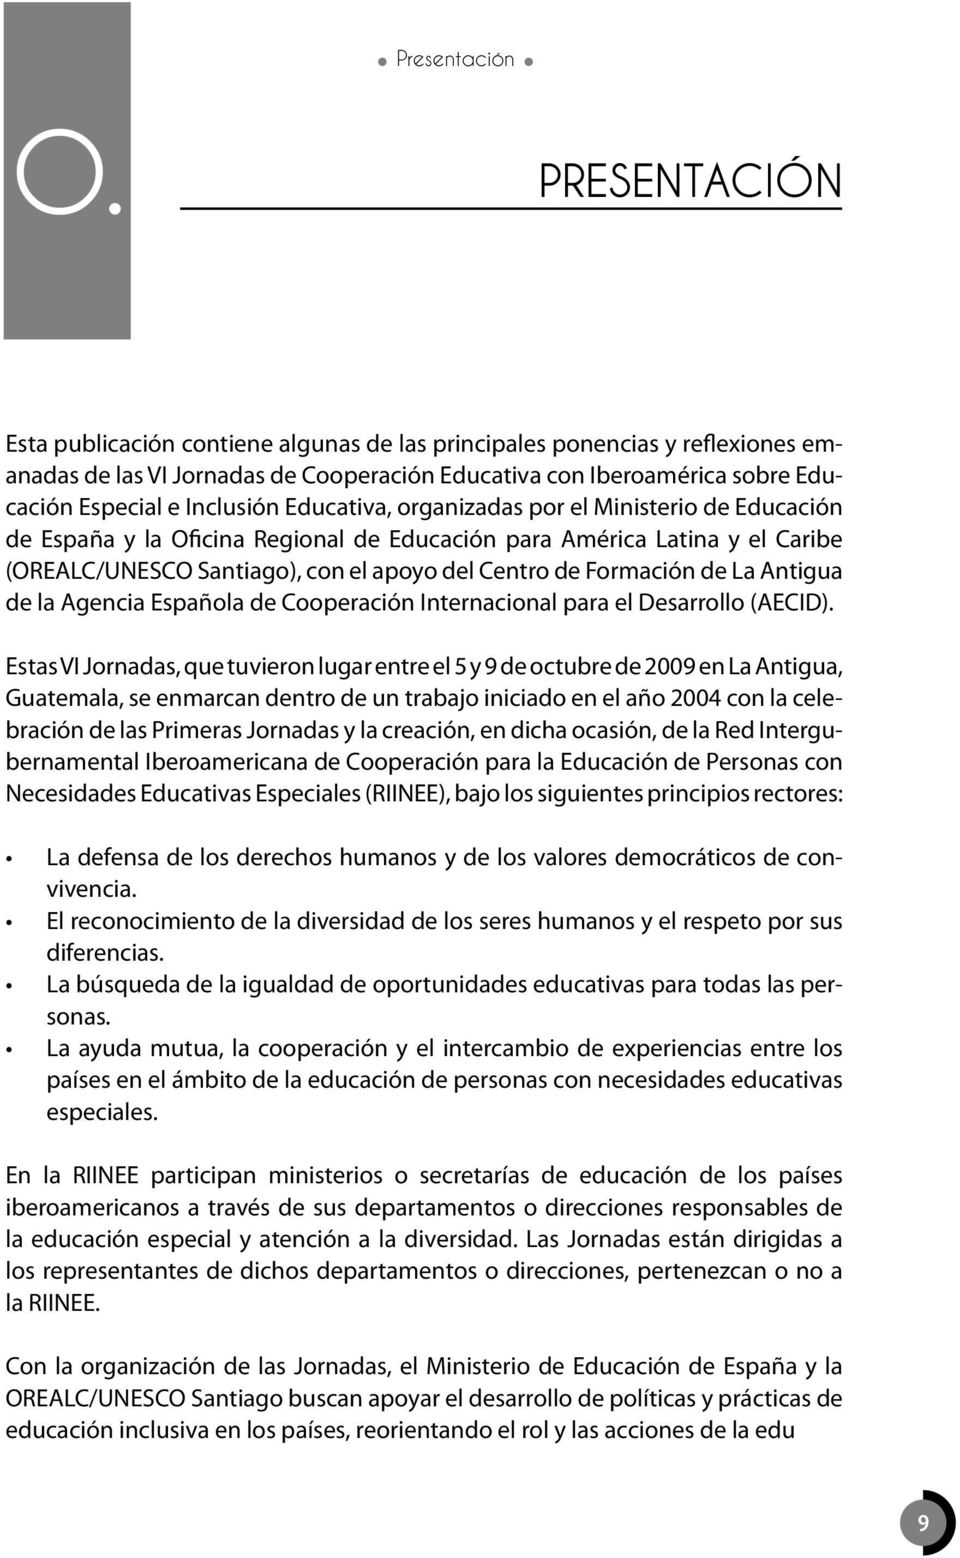 Educativa, organizadas por el Ministerio de Educación de España y la Oficina Regional de Educación para América Latina y el Caribe (OREALC/UNESCO Santiago), con el apoyo del Centro de Formación de La